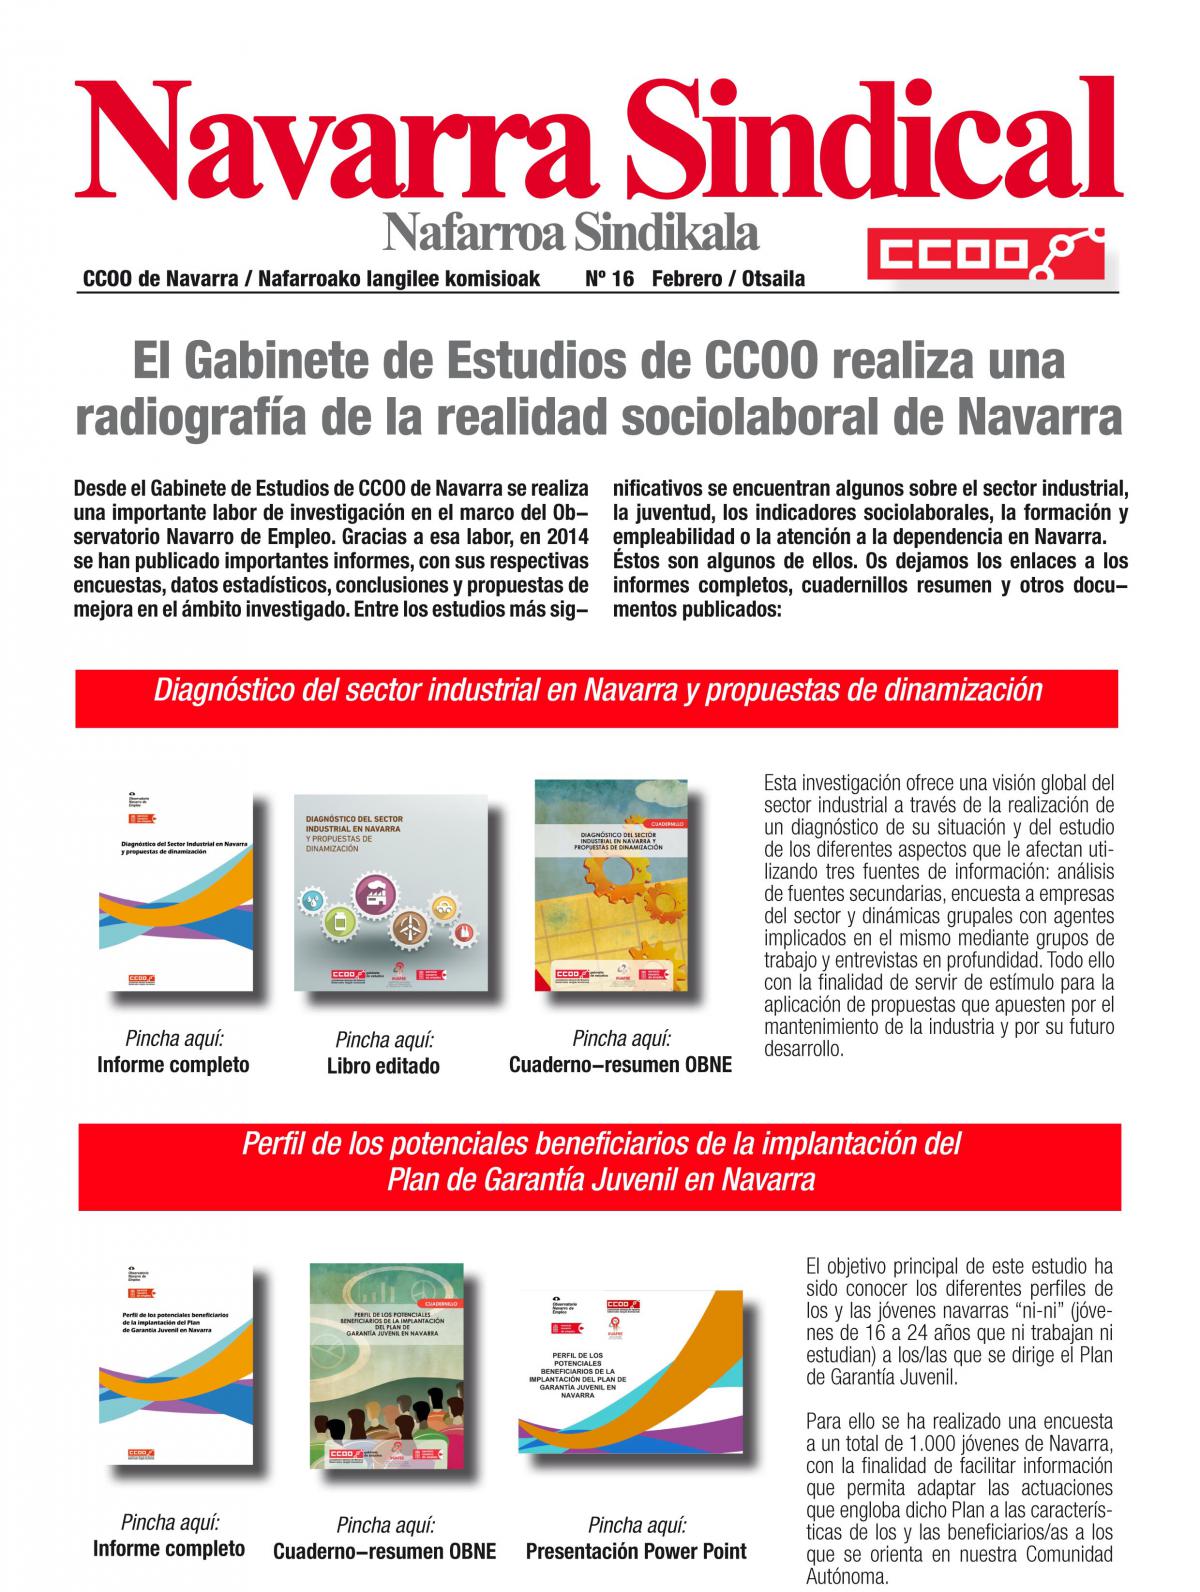 El Gabinete de Estudios de CCOO realiza una radiografa de la realidad sociolaboral de Navarra